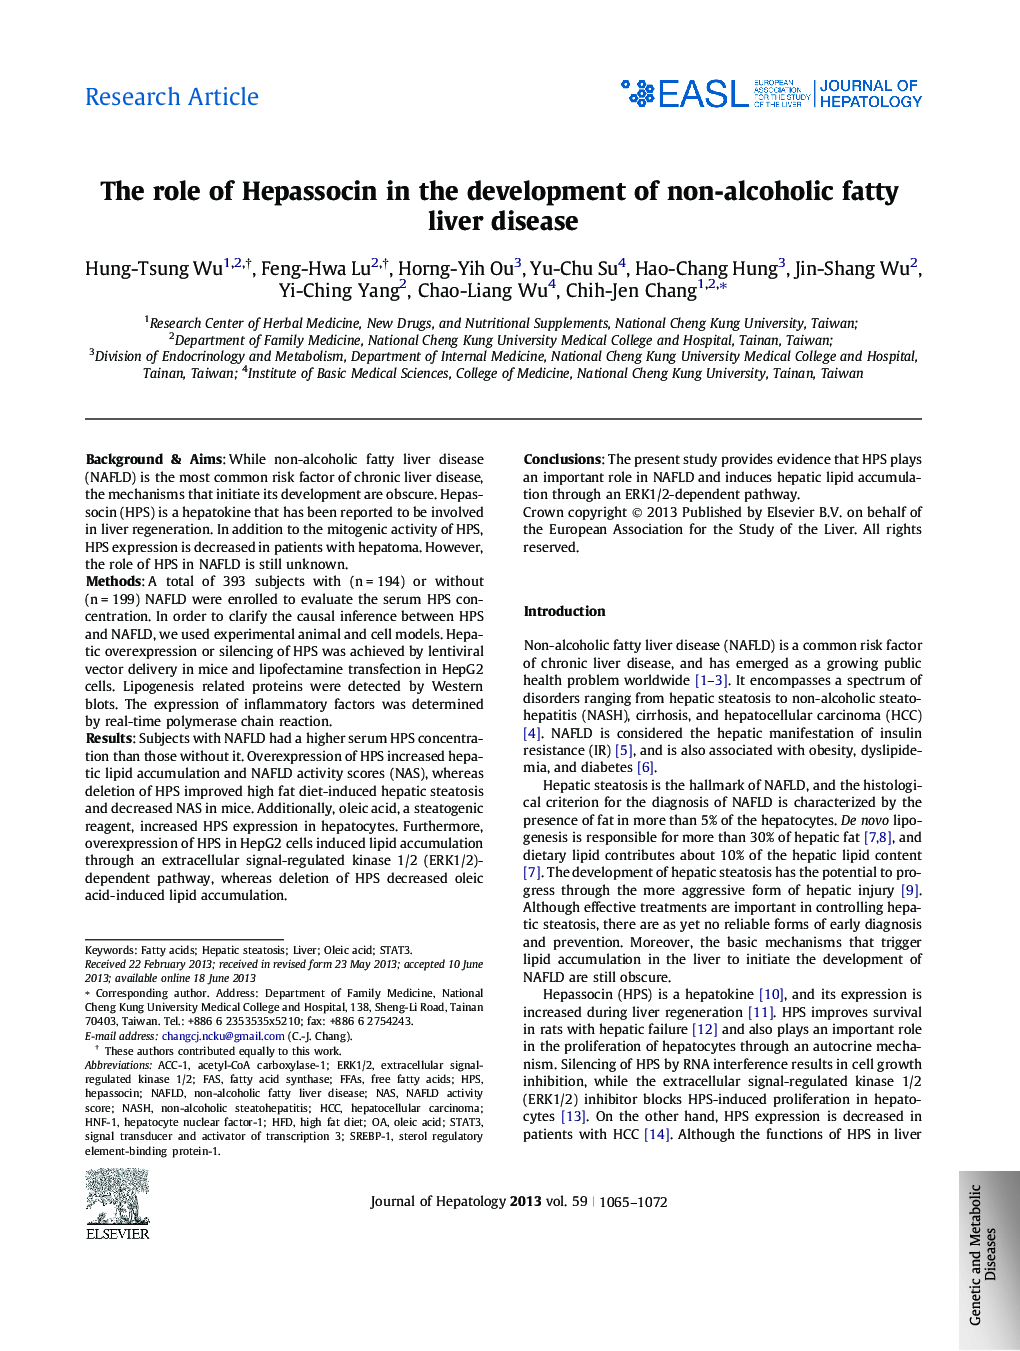 مقاله پژوهشی نقش هپازوسین در توسعه بیماری های کبدی چربی غیر الکلی 